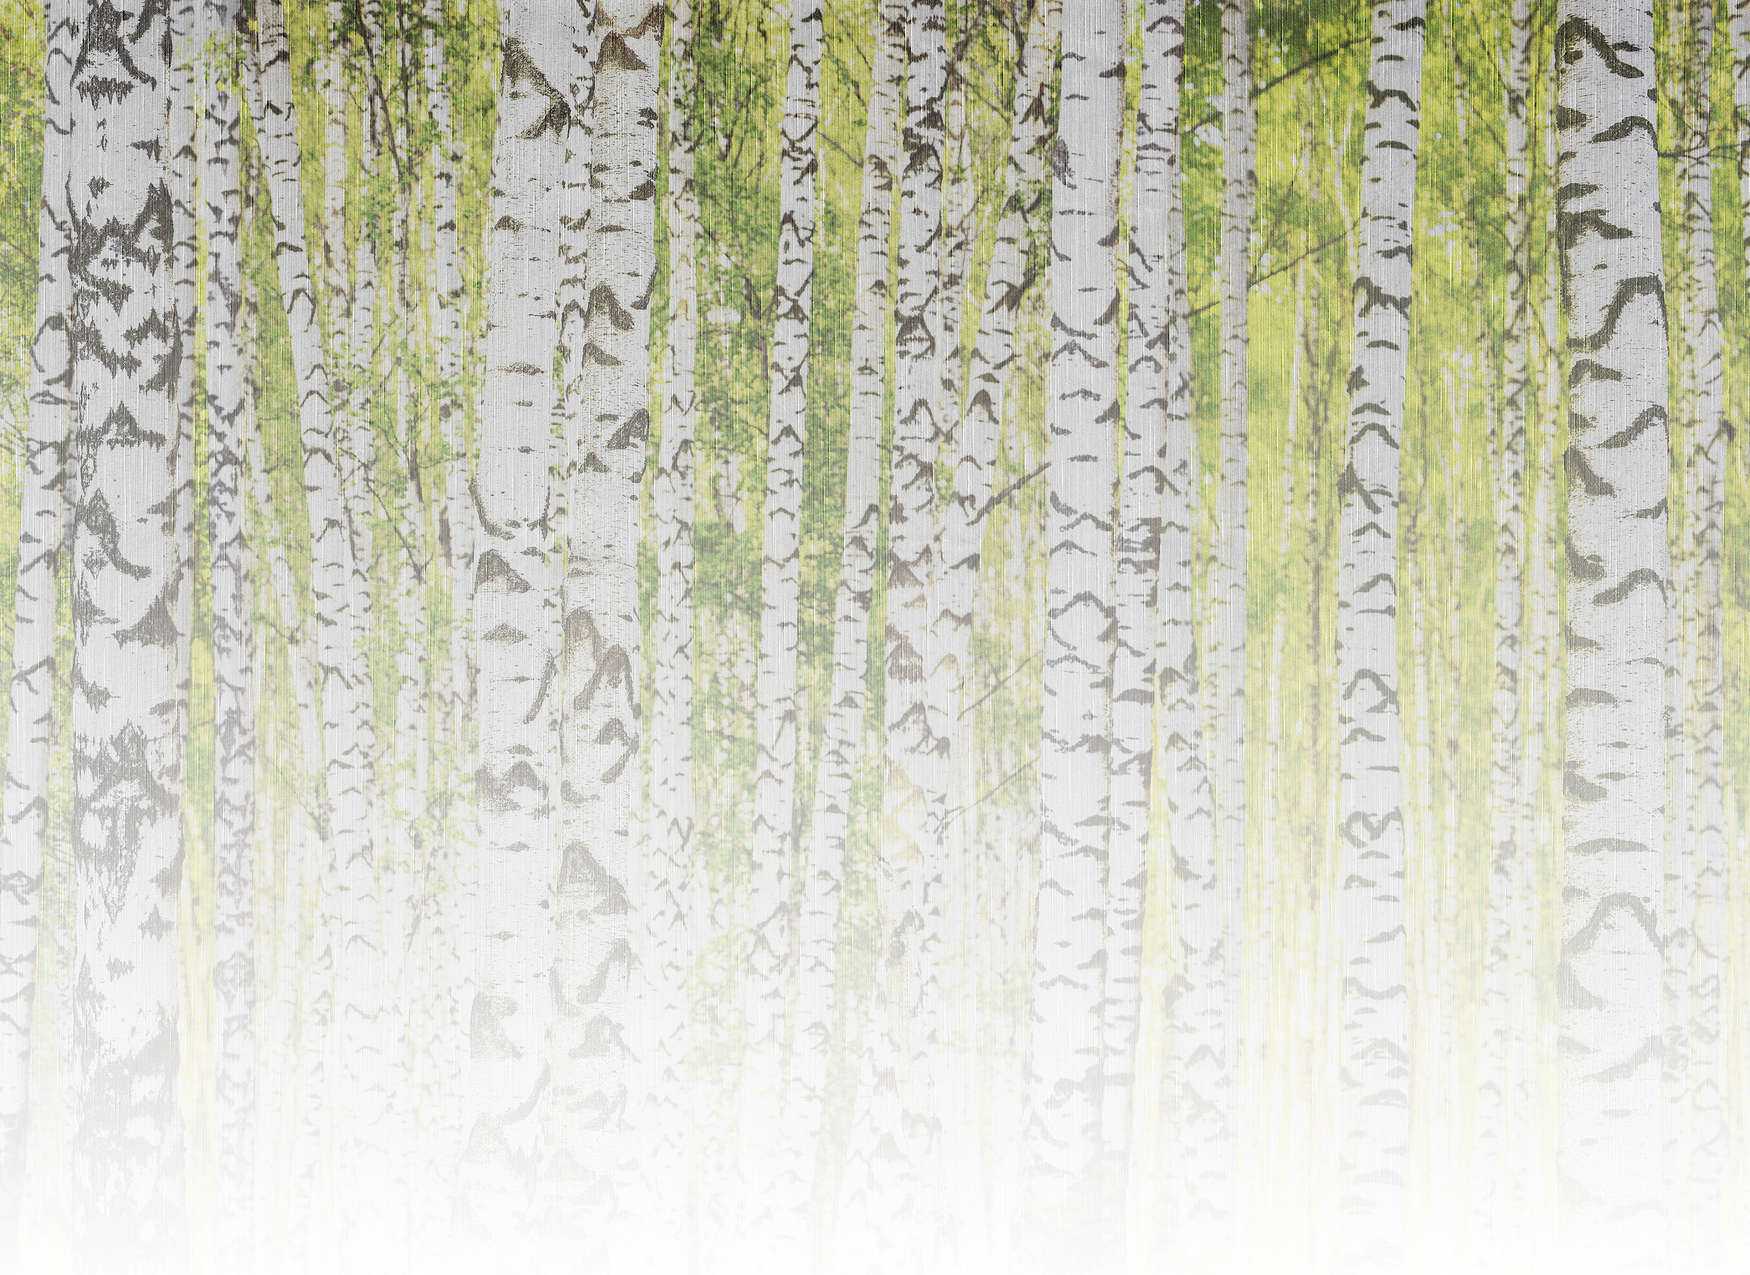             Papier peint panoramique forêt de bouleaux aspect lin - vert, blanc, noir
        